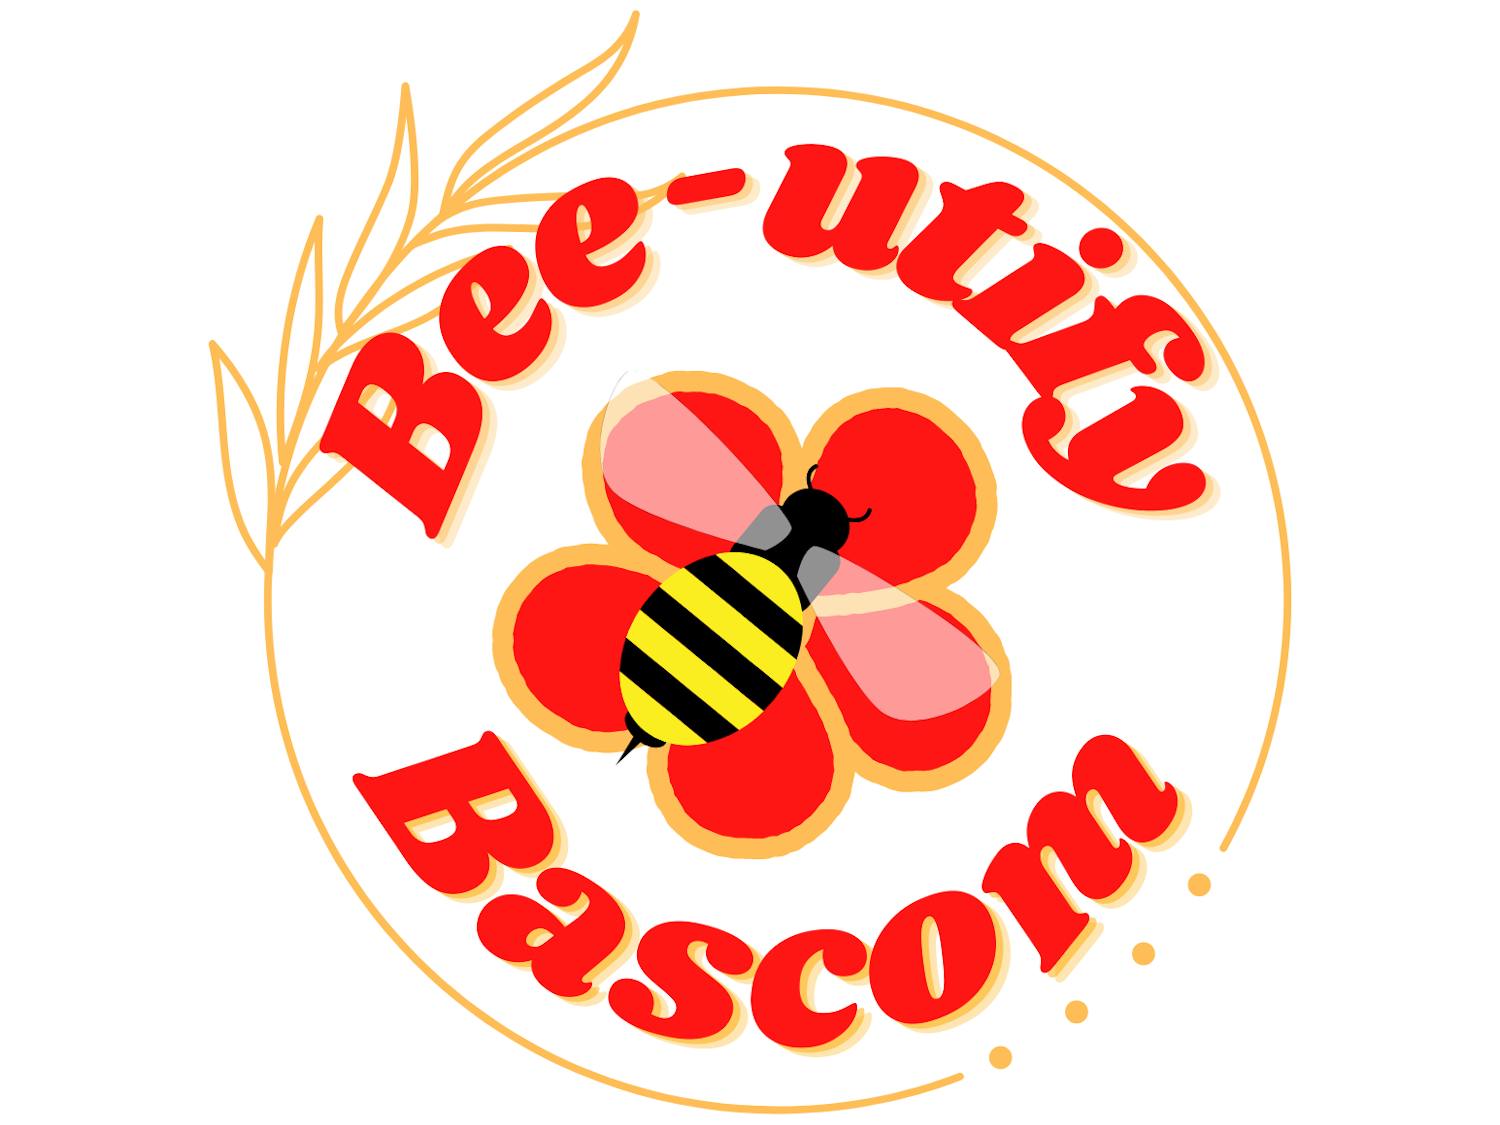 Bee-utify logo (1).png